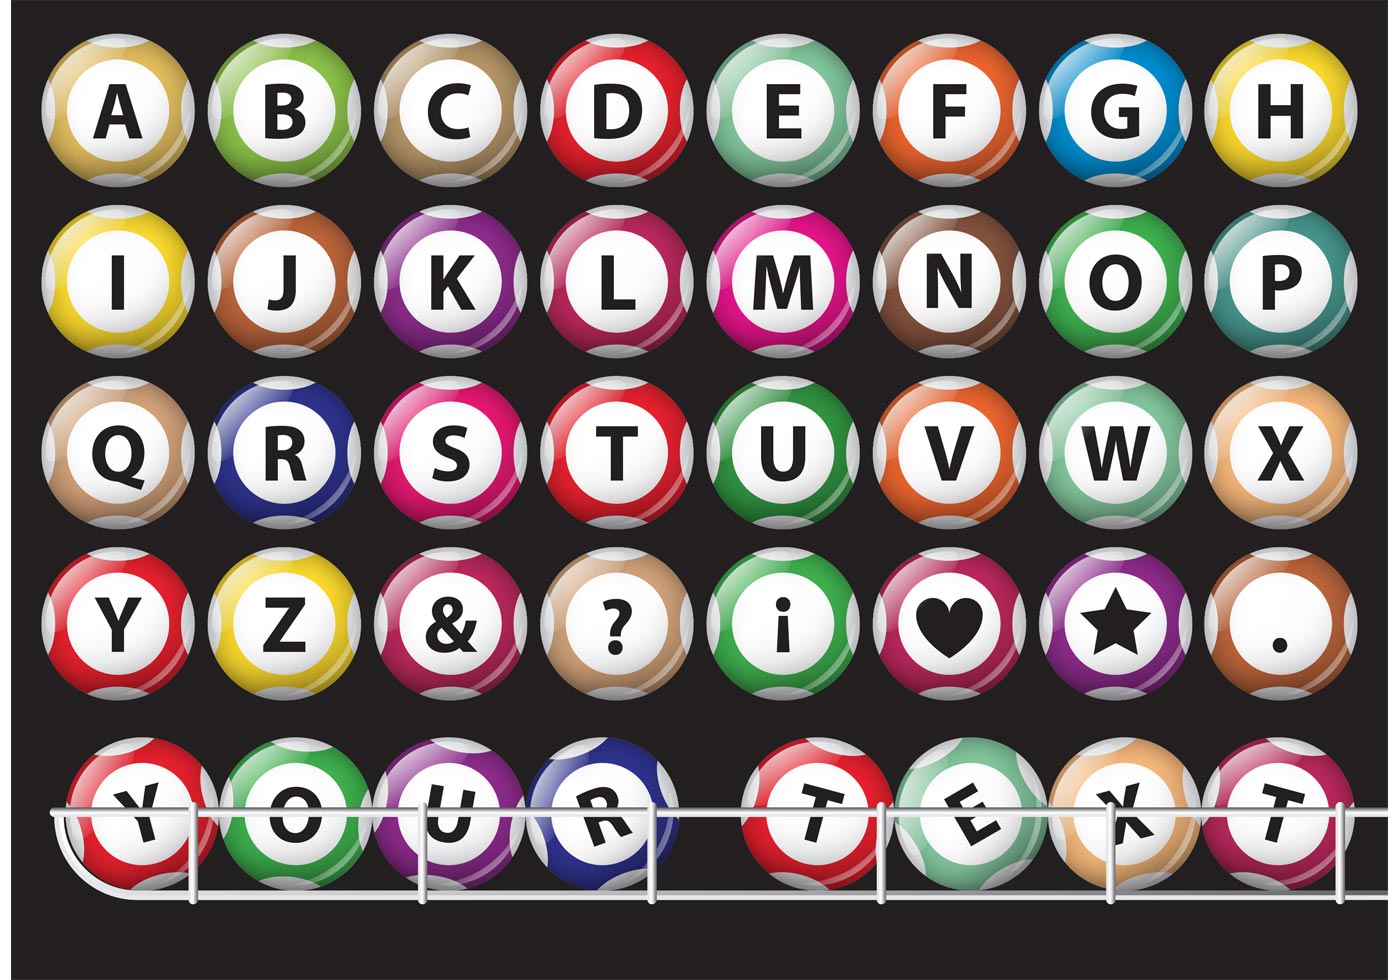 Alphabet Lotto Balls Vectors - Download Free Vector Art, Stock Graphics